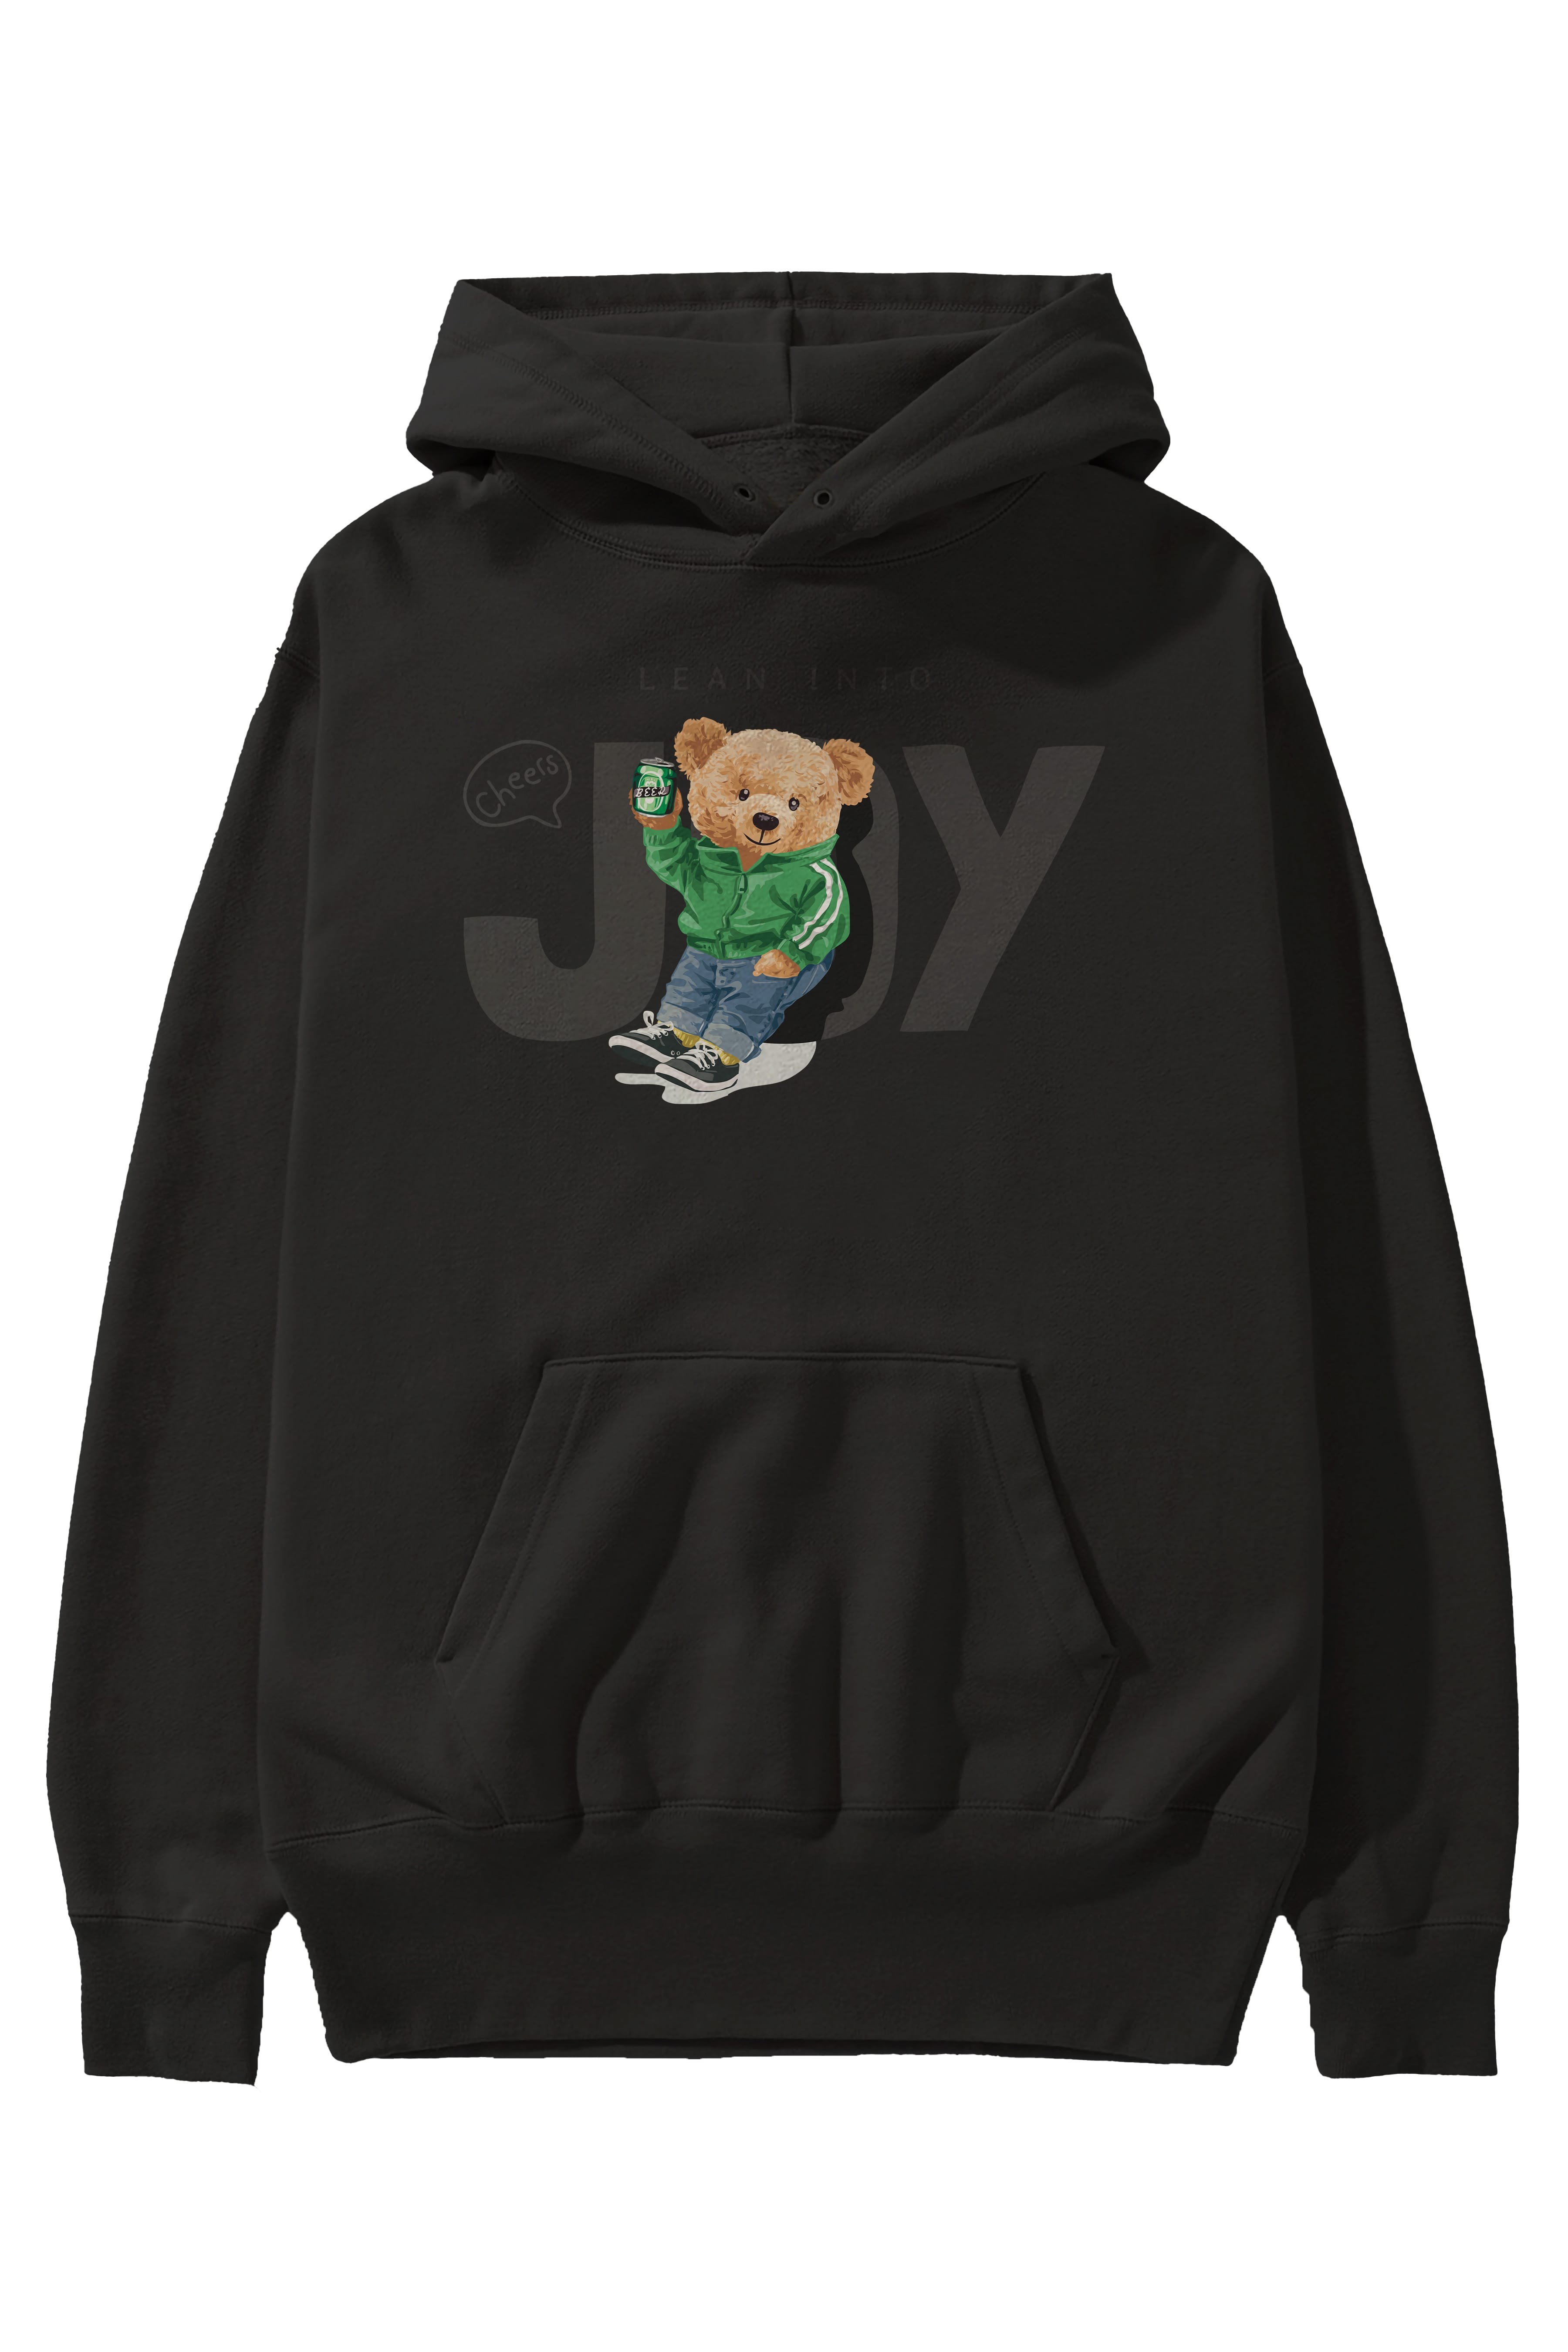 Teddy Bear Joy Ön Baskılı Hoodie Oversize Kapüşonlu Sweatshirt Erkek Kadın Unisex